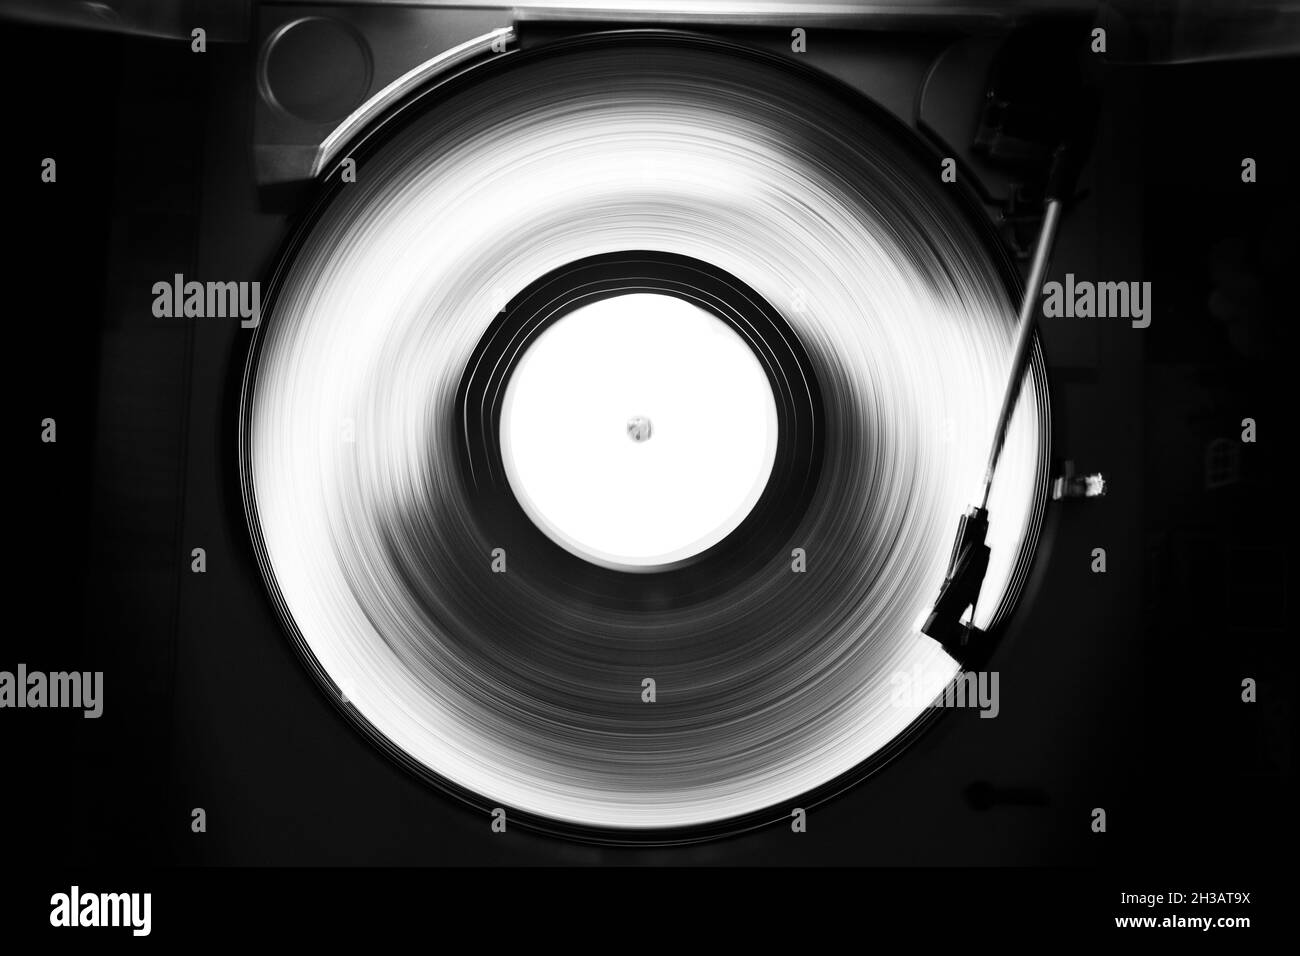 Image abstraite en noir et blanc d'un plateau tournant pour disques vinyles.Vitesse d'obturation élevée.Pistes de mouvement. Banque D'Images